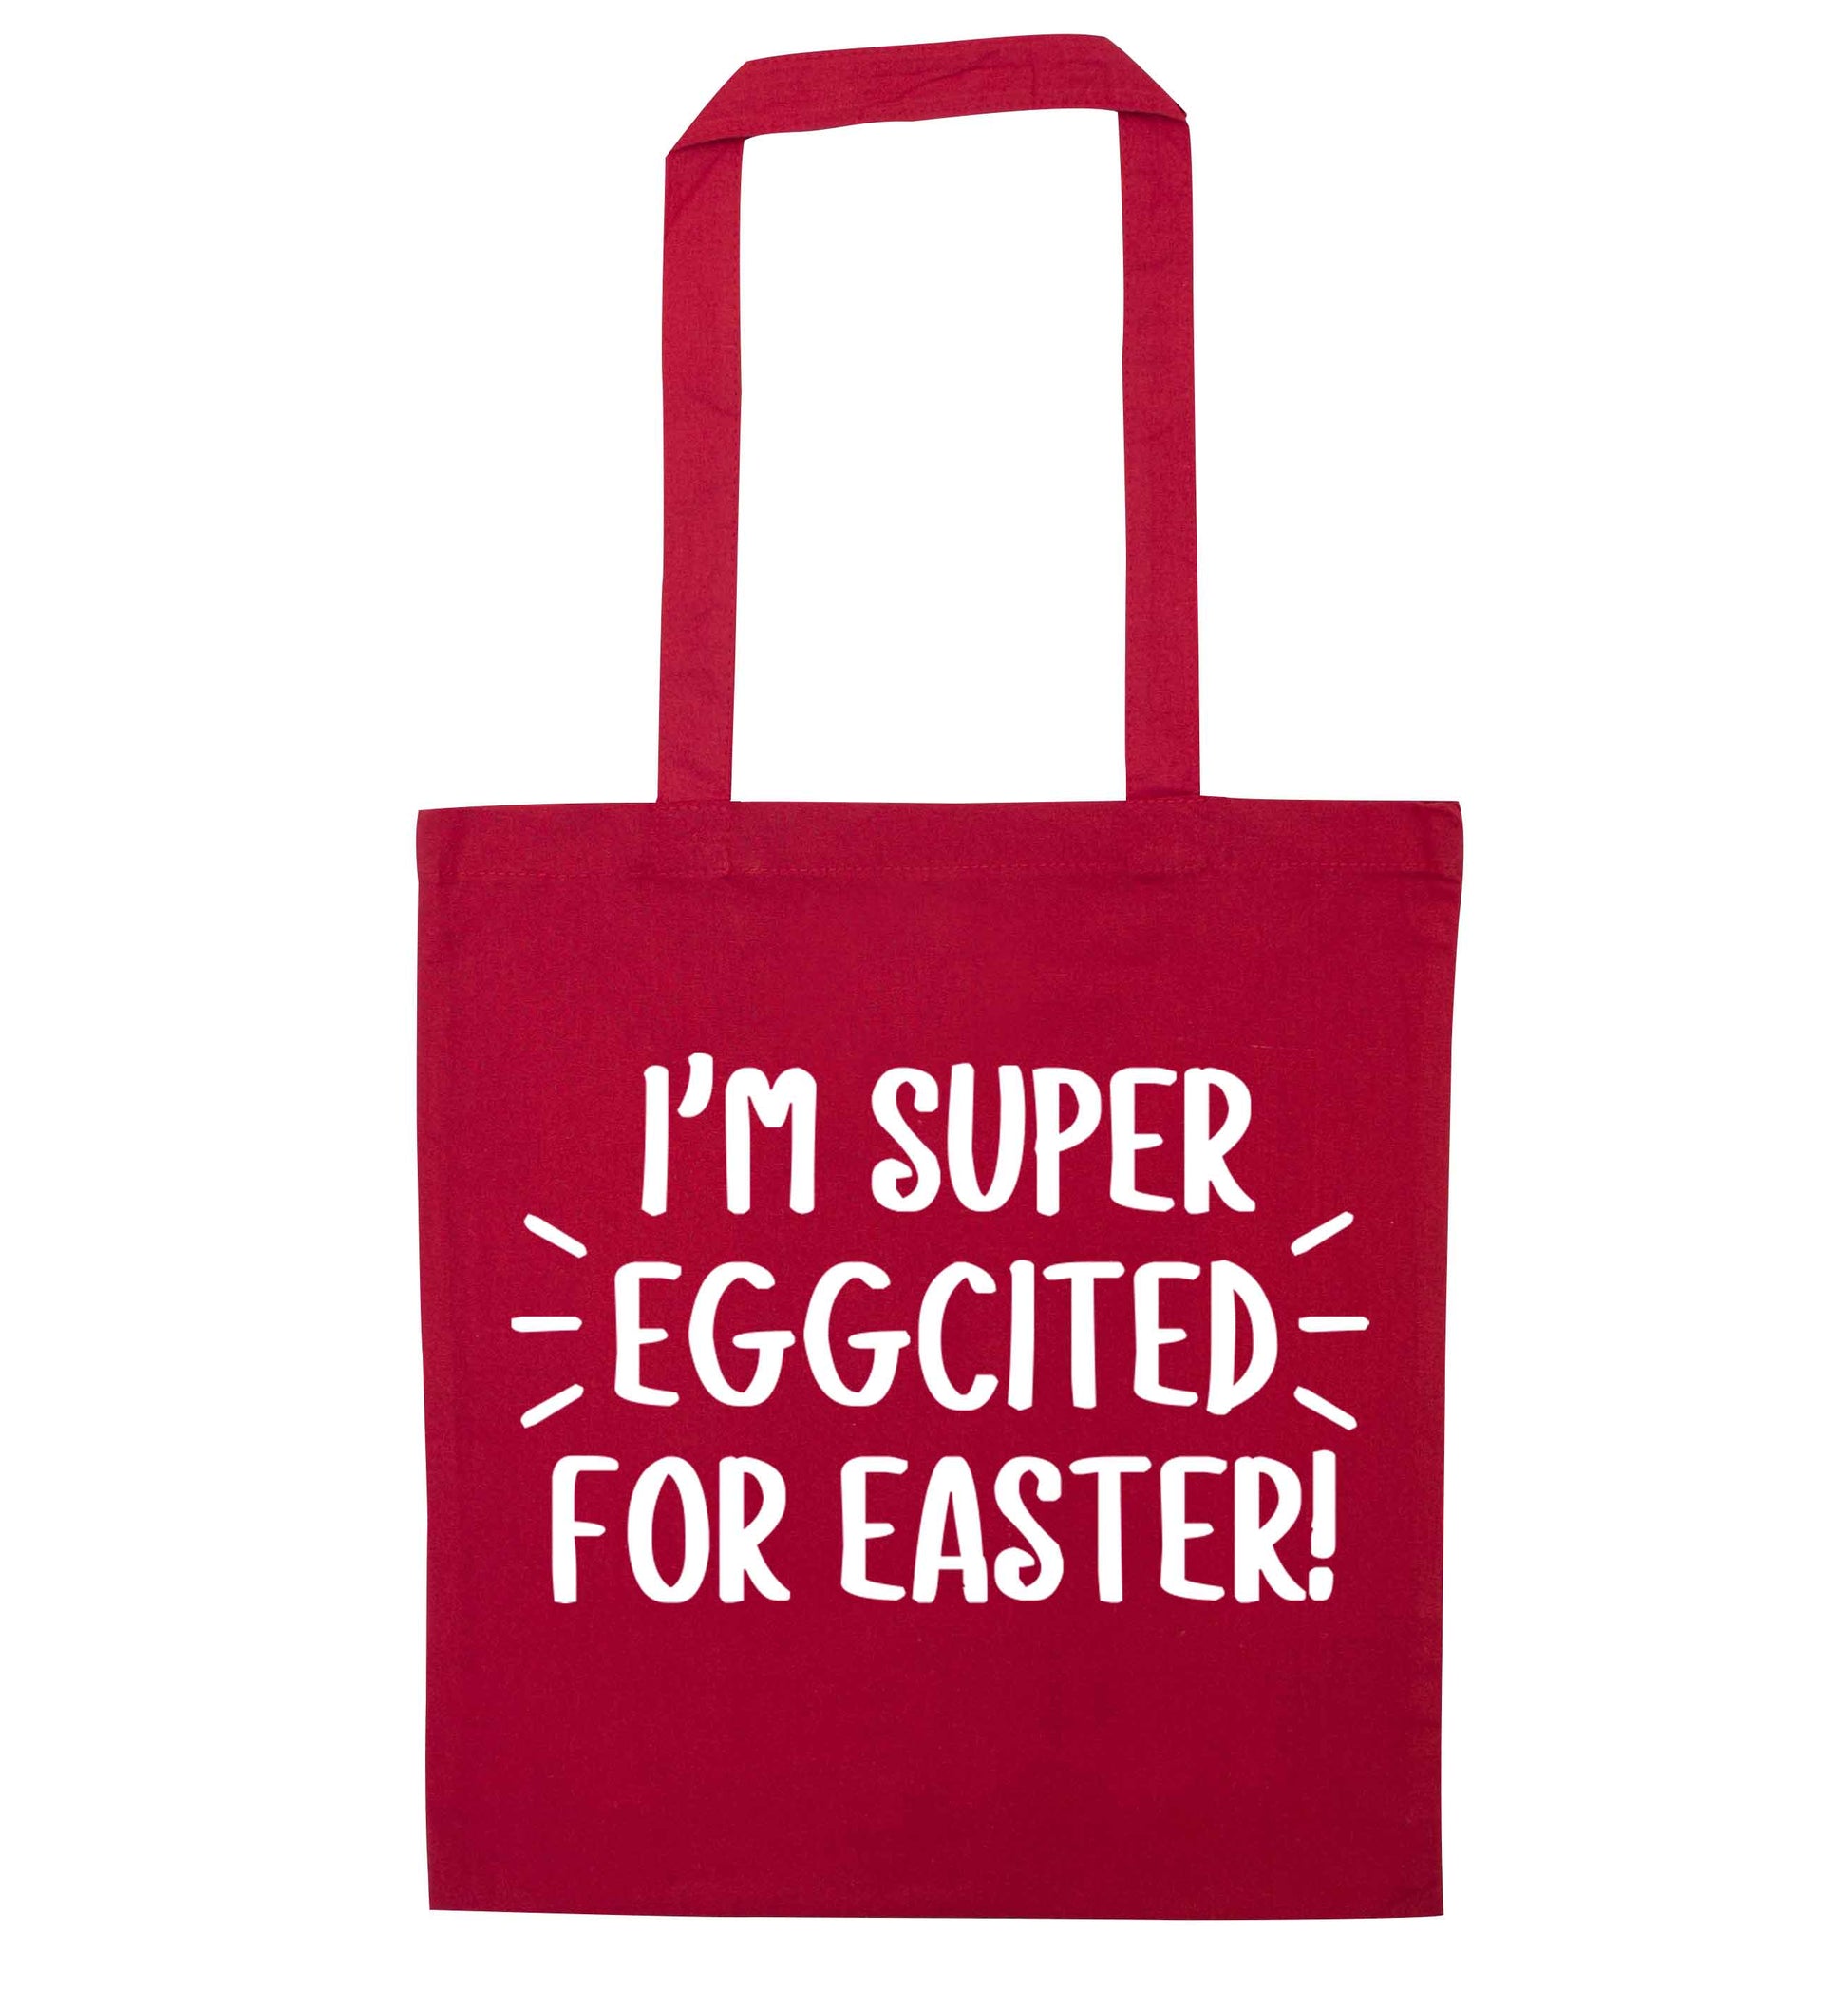 I'm super eggcited for Easter red tote bag